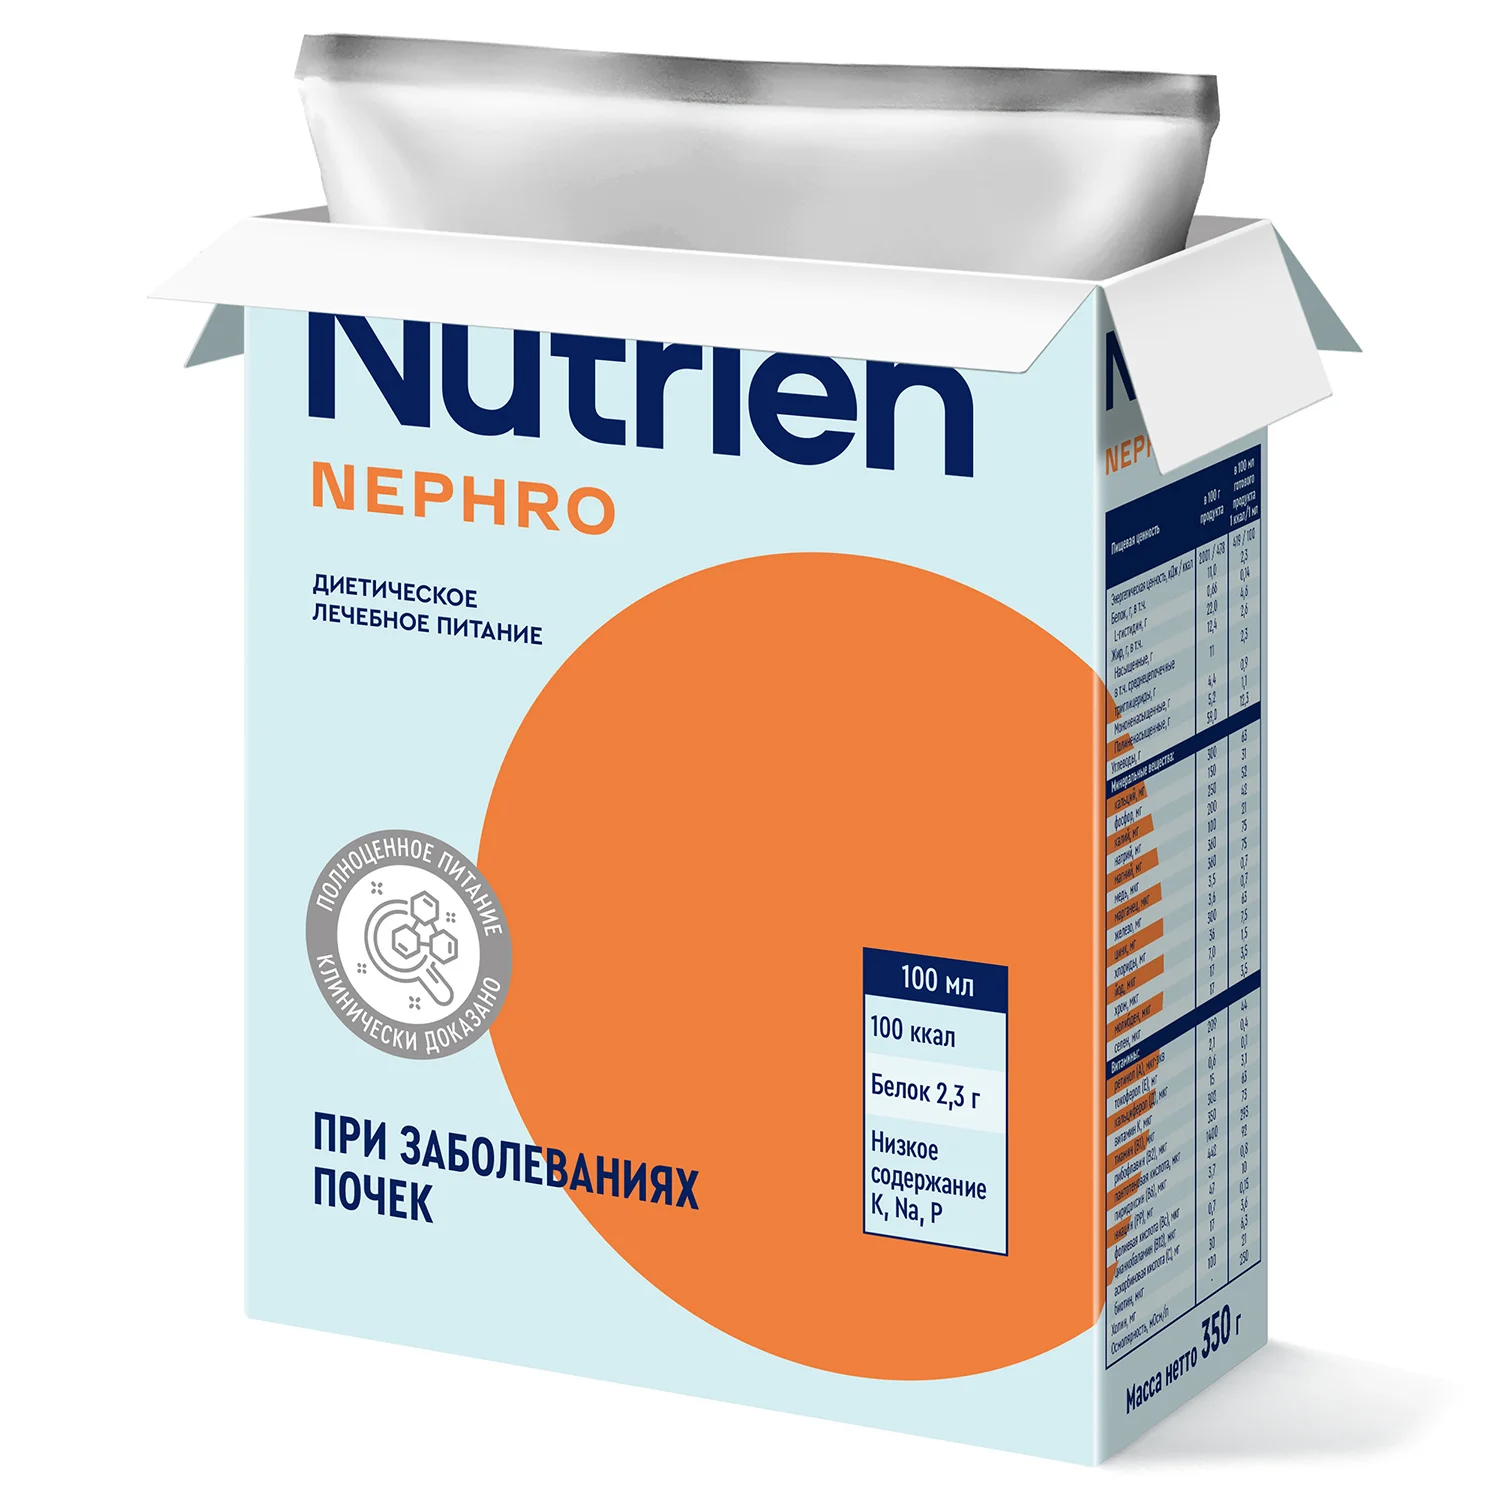 Nutrien Nephro - 7